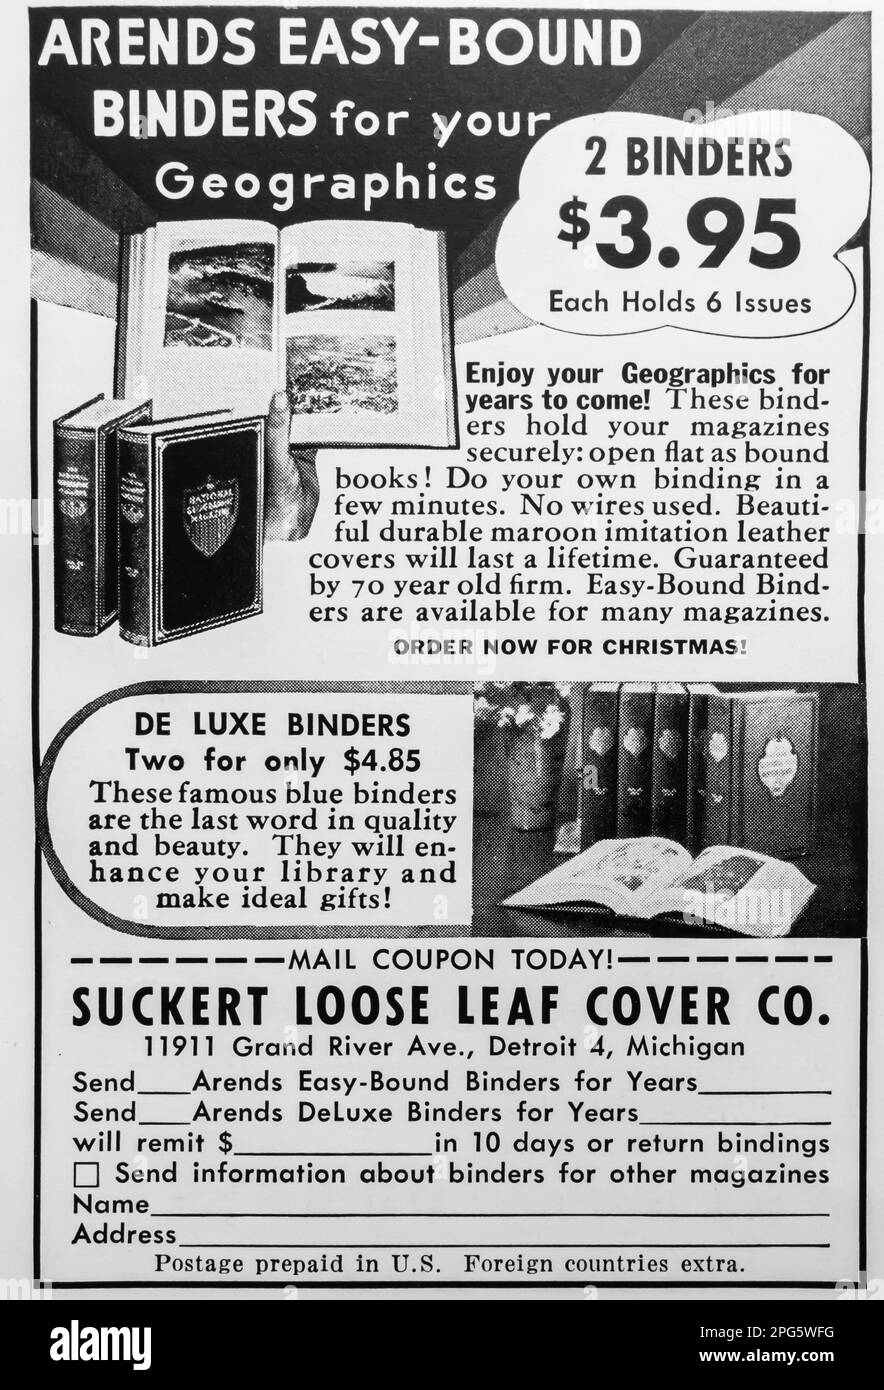 Arends Easy-bound binders pubblicità in una rivista NatGeo, dicembre 1956 Foto Stock